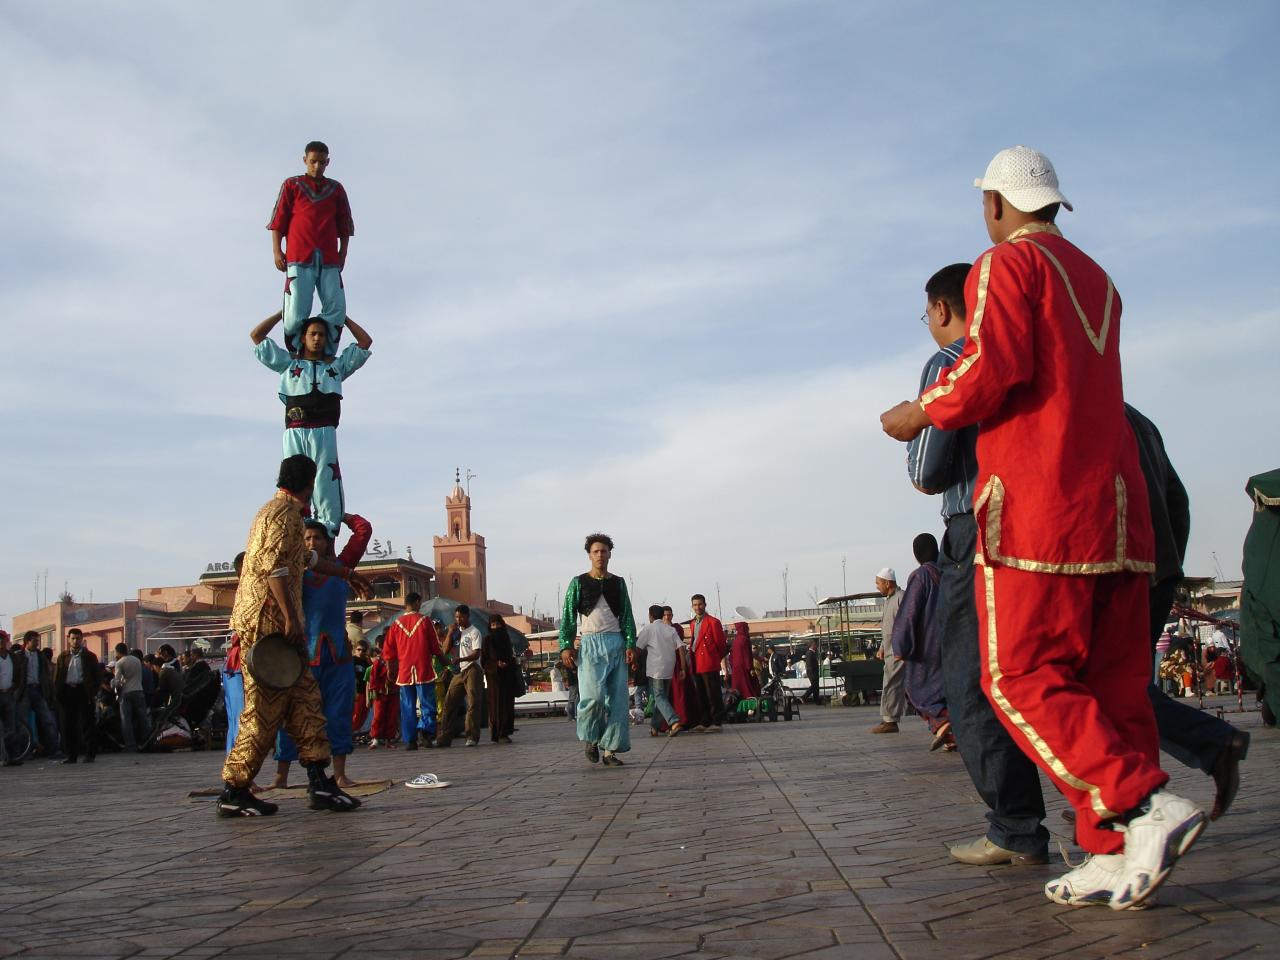 Acrobats in Jemaa el-Fnaa square in Marrakech